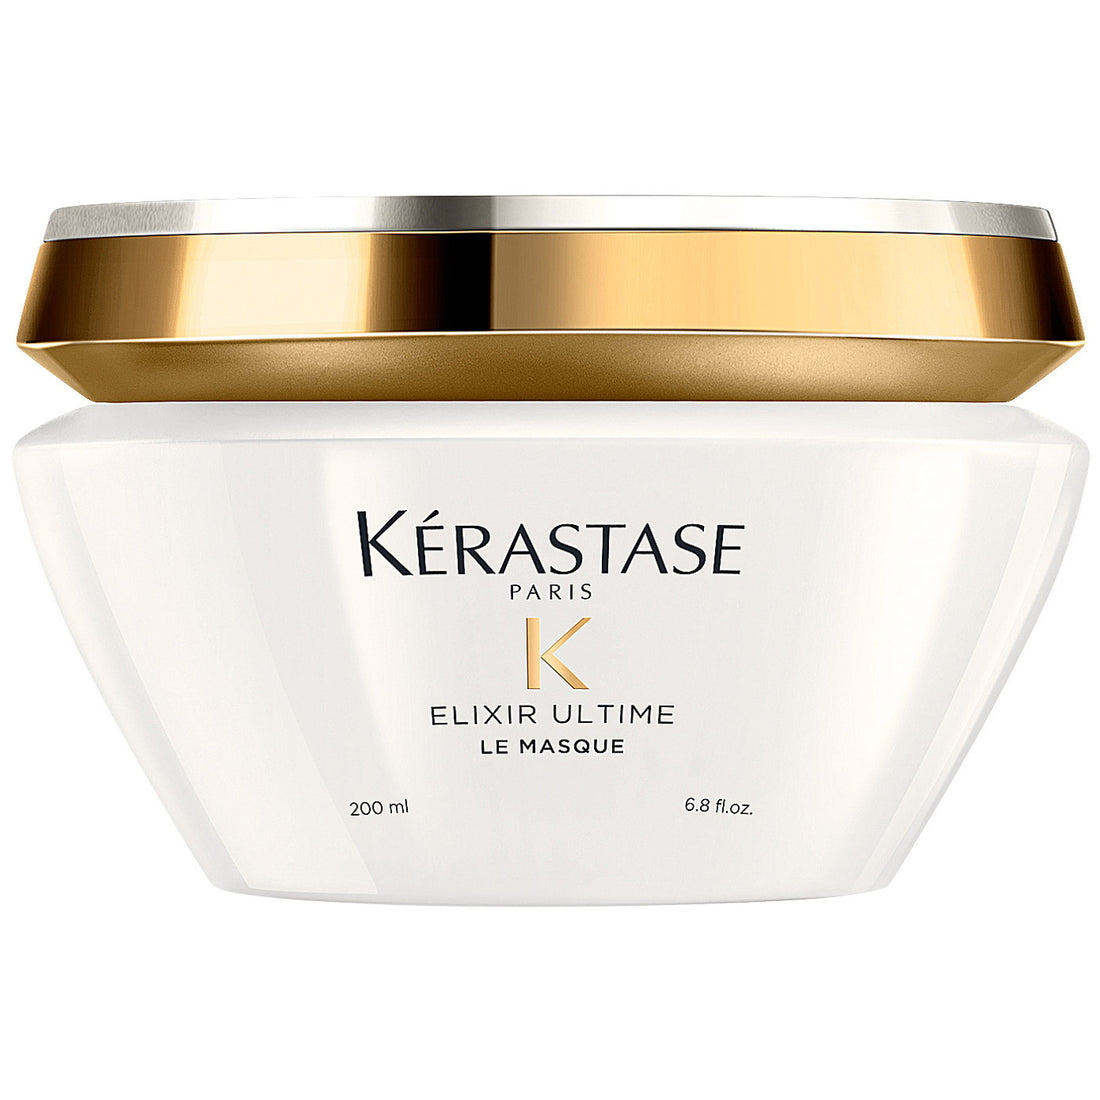 Kerastase Elixir Ultime Le Masque Hair Mask For Shinier Hair 200ml